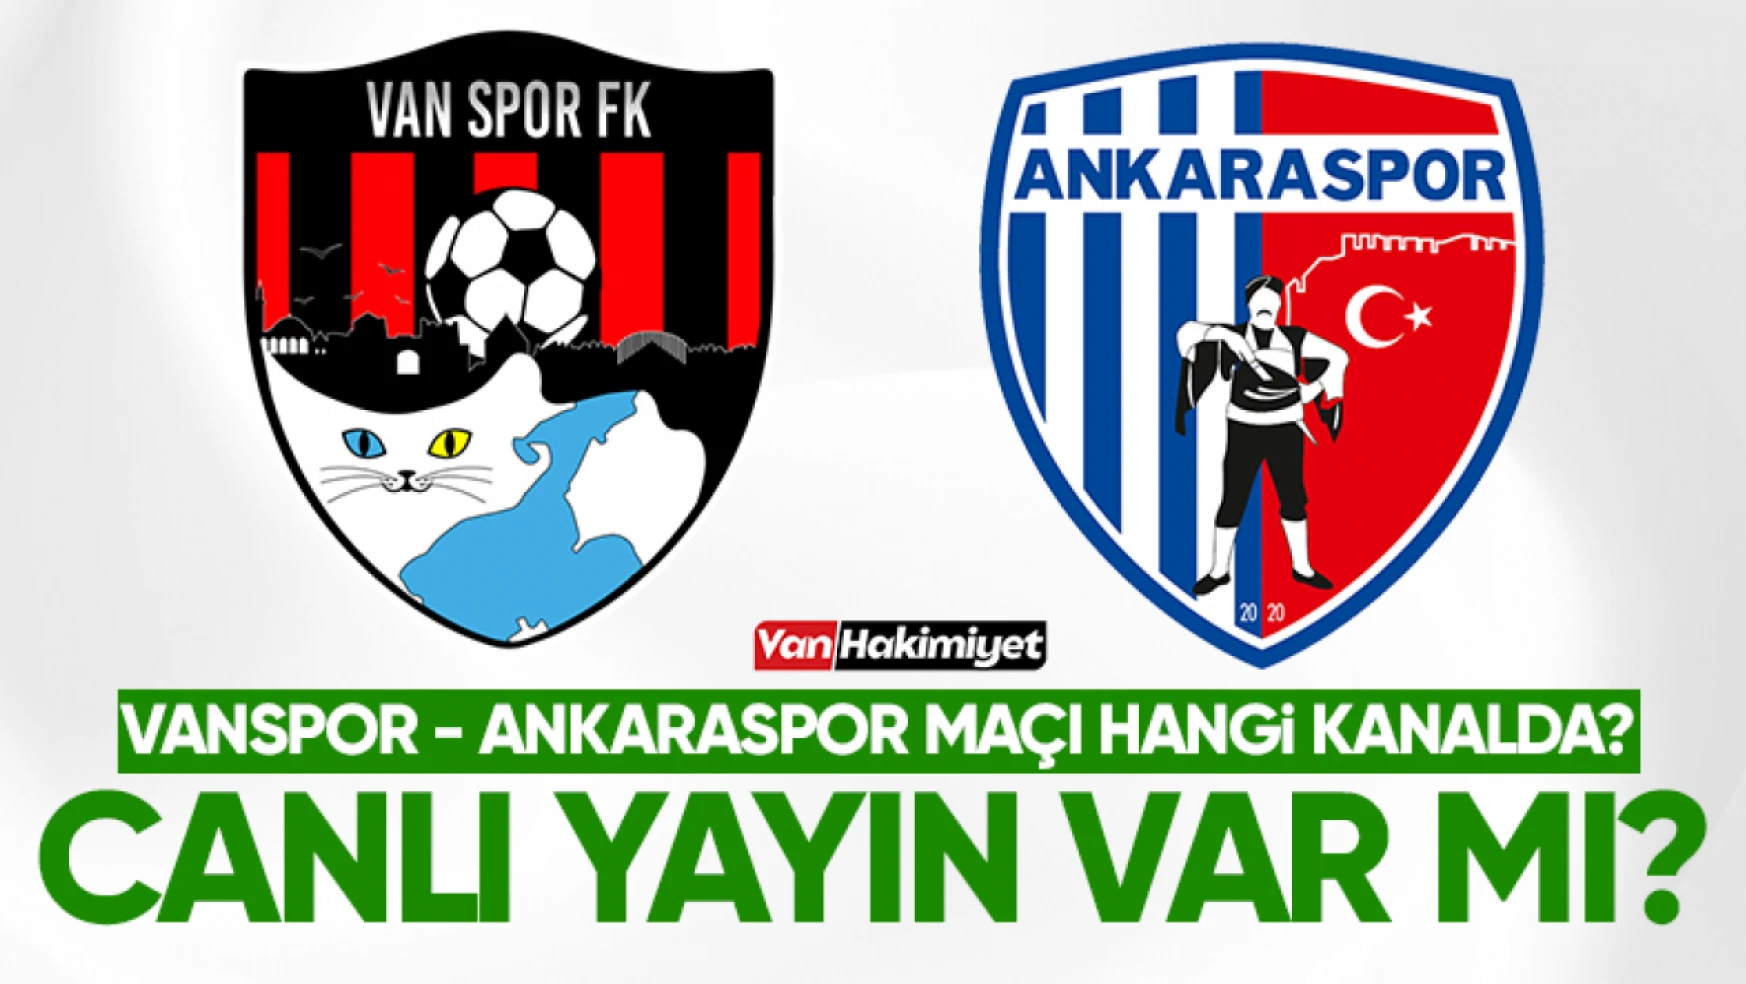 Vanspor-Ankaraspor maçı hangi kanalda? Canlı yayınlanacak mı